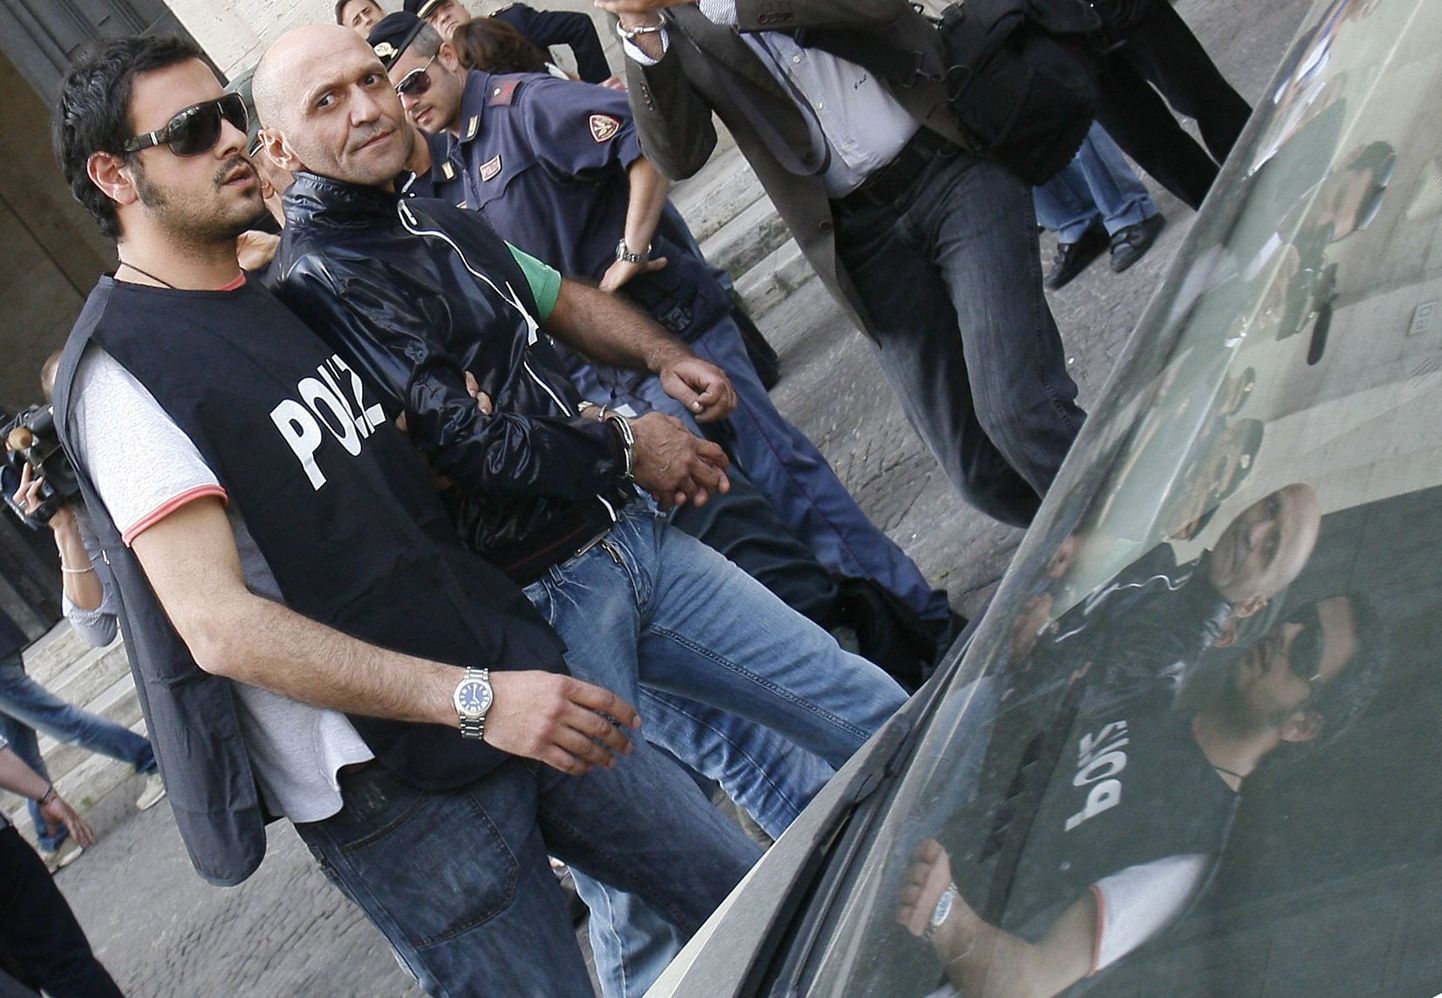 Itaalia politseinikud viimas ära Napolis vahistatud arvatavaid maffiamehi.